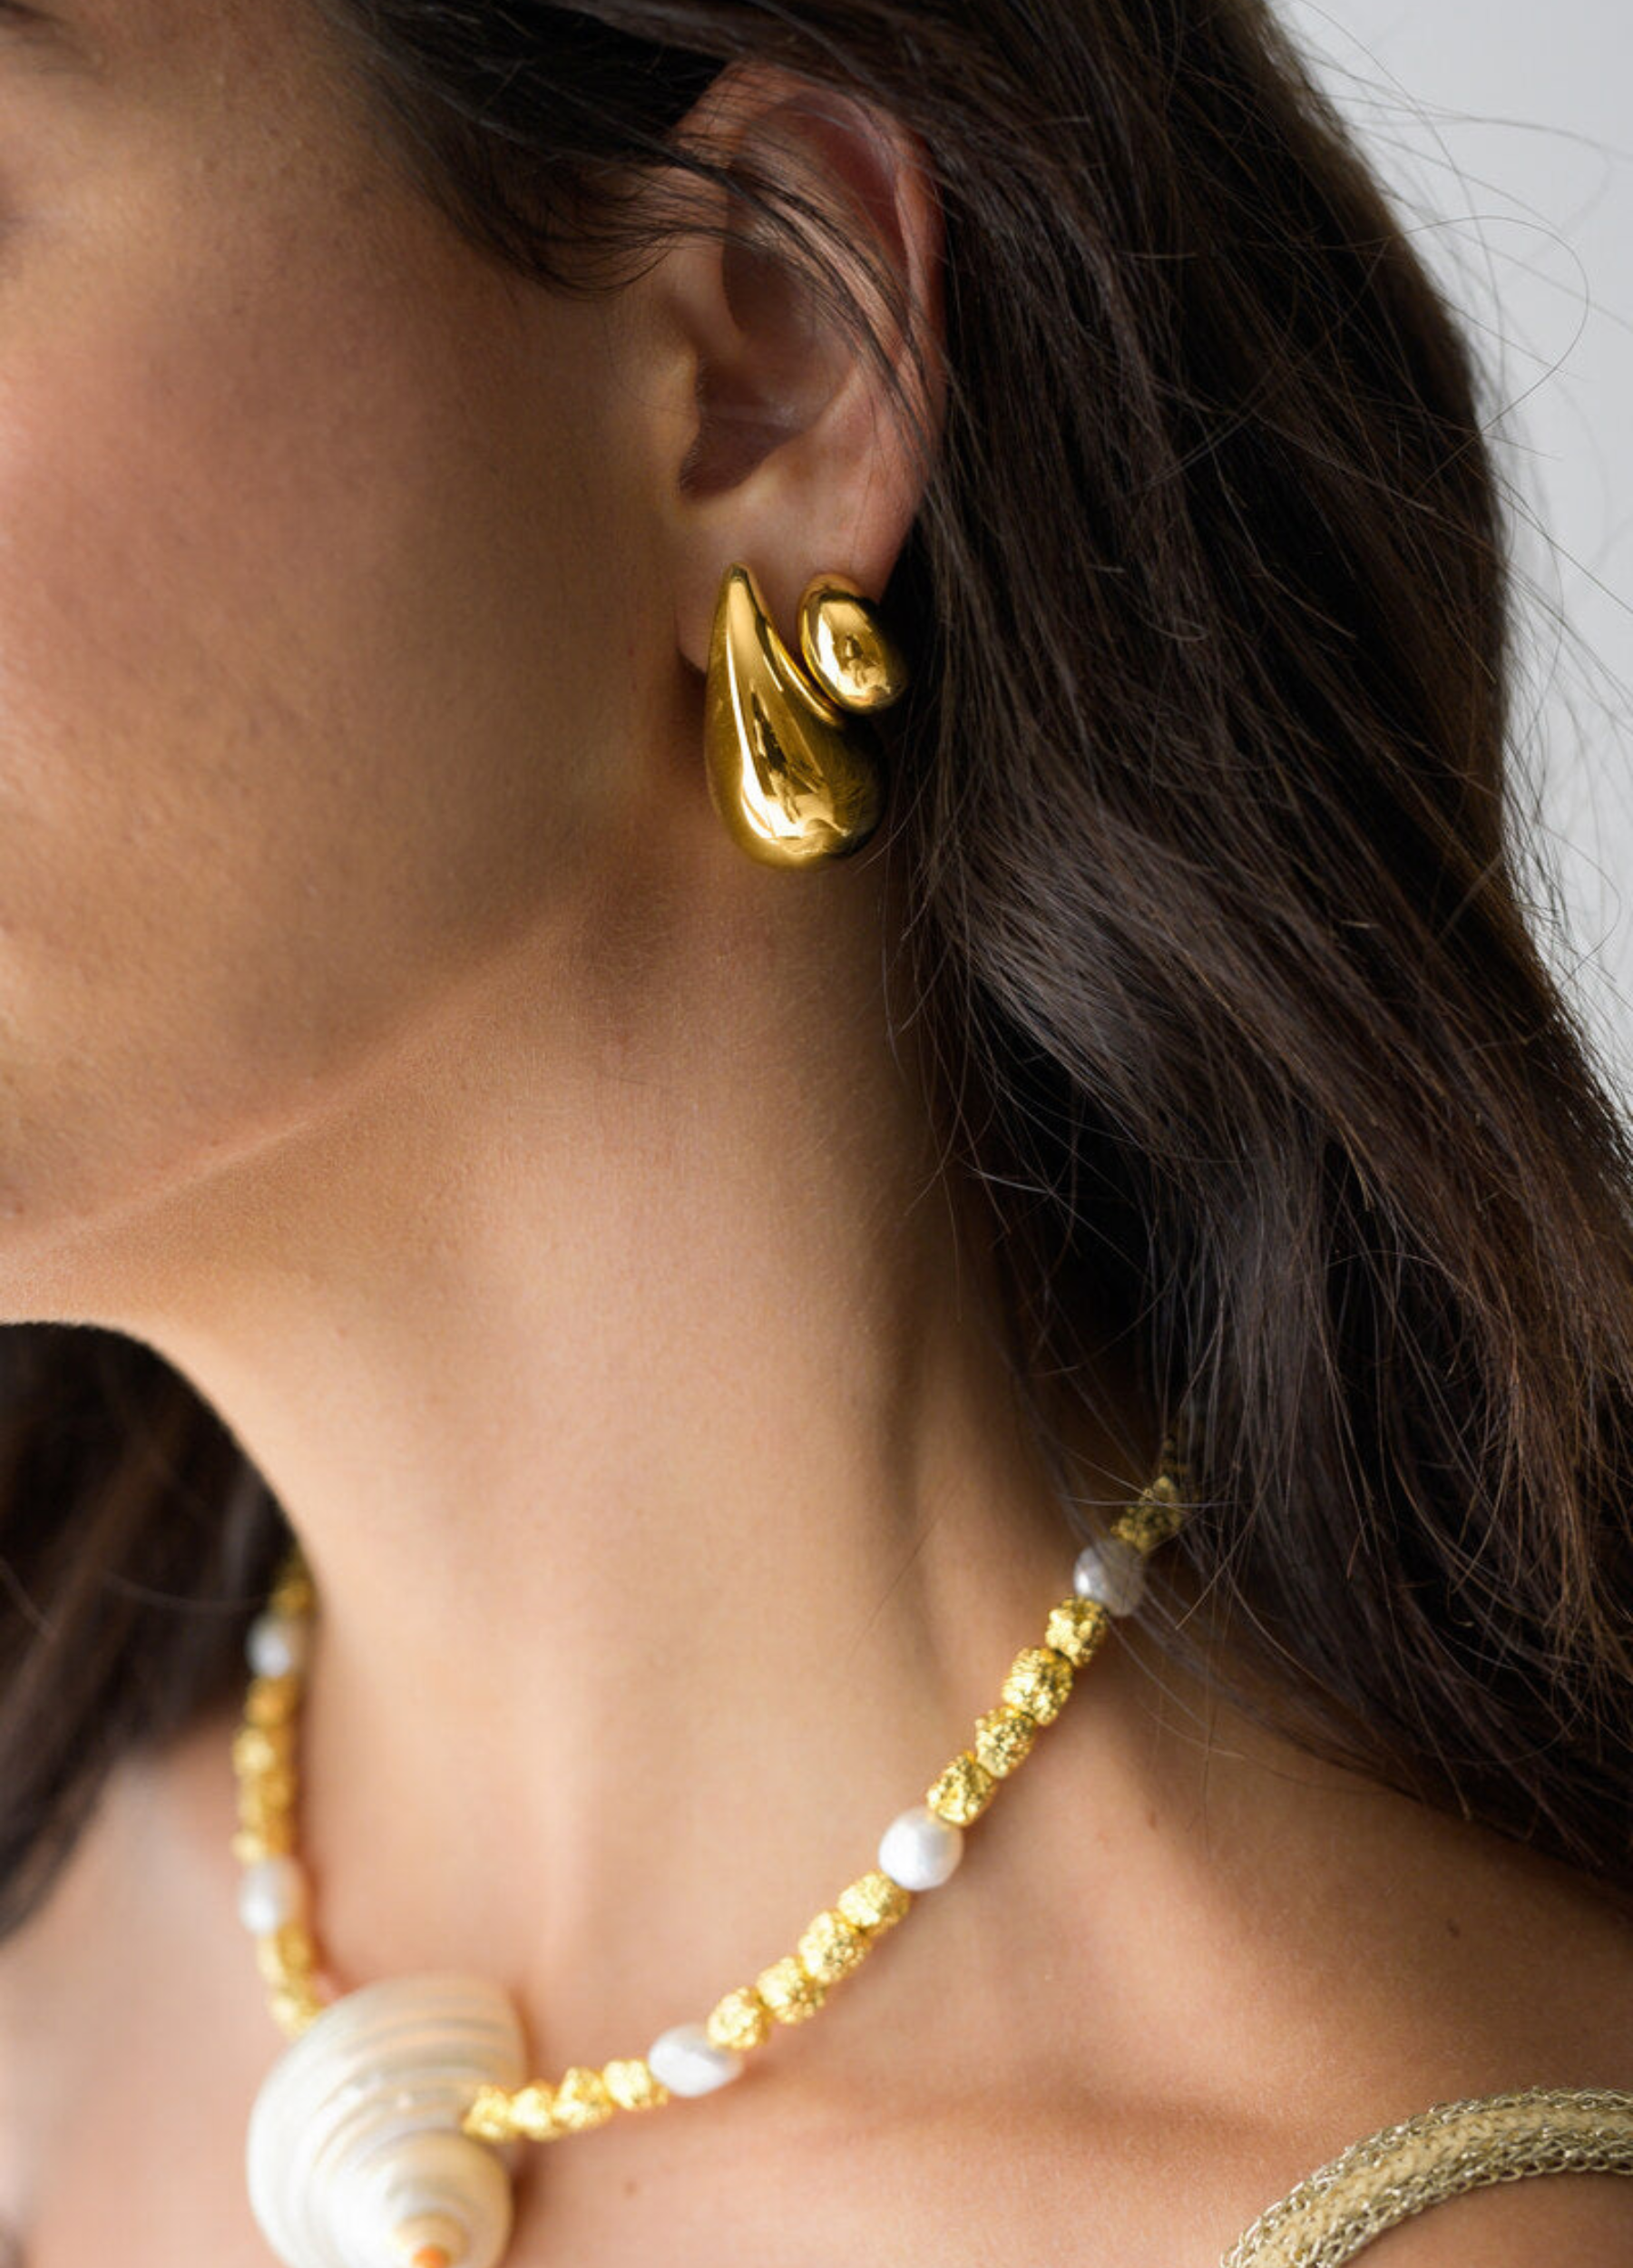 Sophia gold teardrop earrings from Indigo & Wolfe